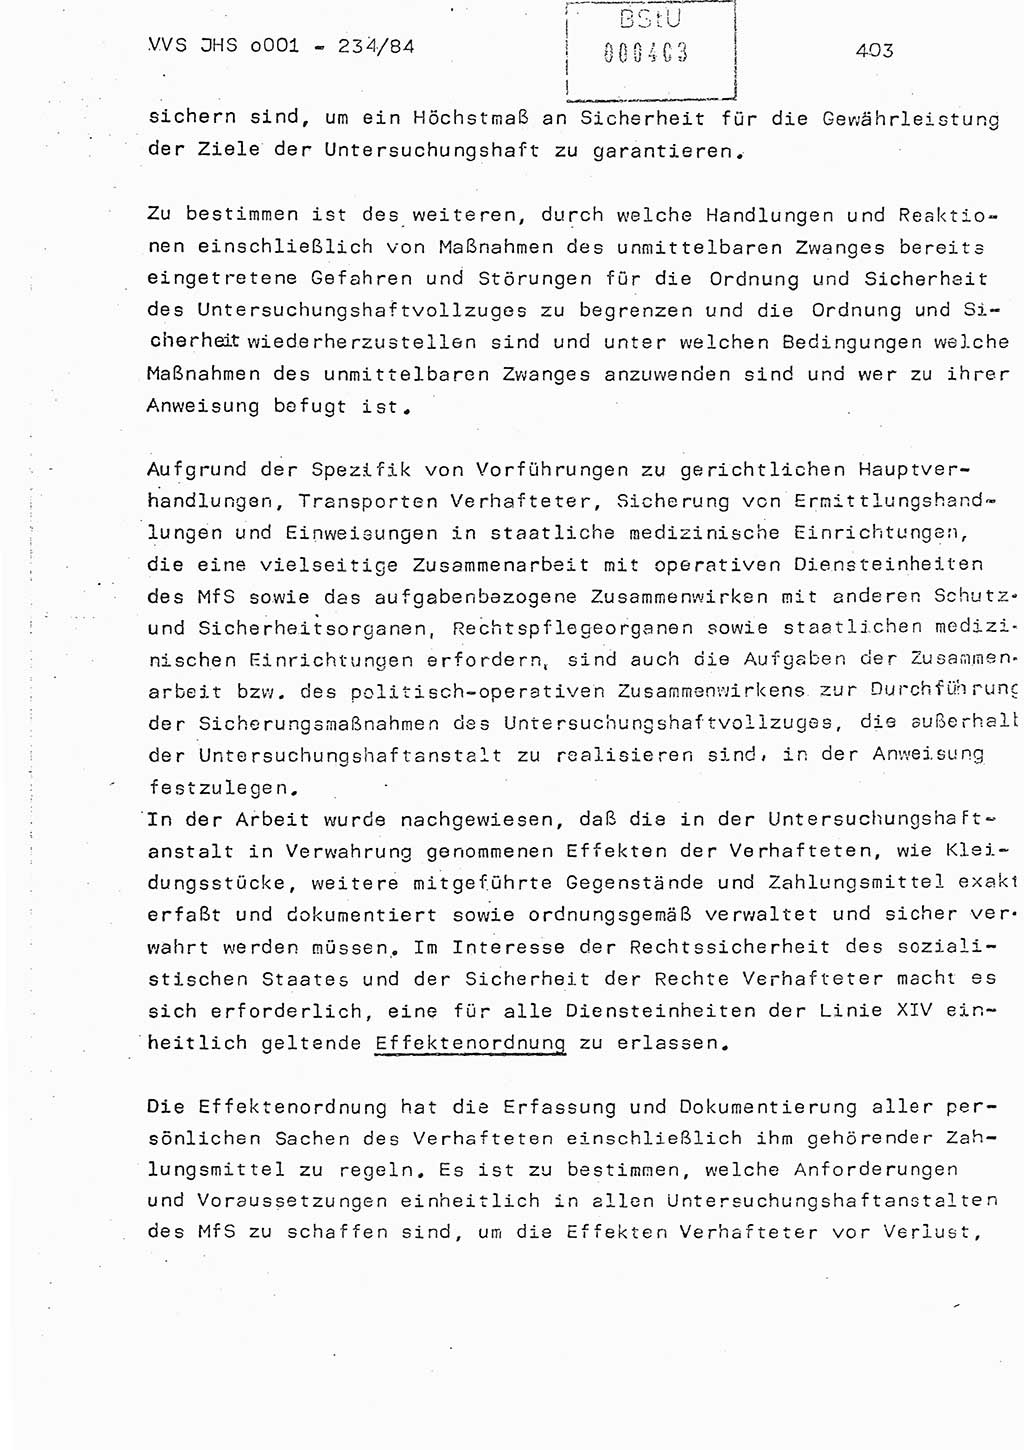 Dissertation Oberst Siegfried Rataizick (Abt. ⅩⅣ), Oberstleutnant Volkmar Heinz (Abt. ⅩⅣ), Oberstleutnant Werner Stein (HA Ⅸ), Hauptmann Heinz Conrad (JHS), Ministerium für Staatssicherheit (MfS) [Deutsche Demokratische Republik (DDR)], Juristische Hochschule (JHS), Vertrauliche Verschlußsache (VVS) o001-234/84, Potsdam 1984, Seite 403 (Diss. MfS DDR JHS VVS o001-234/84 1984, S. 403)